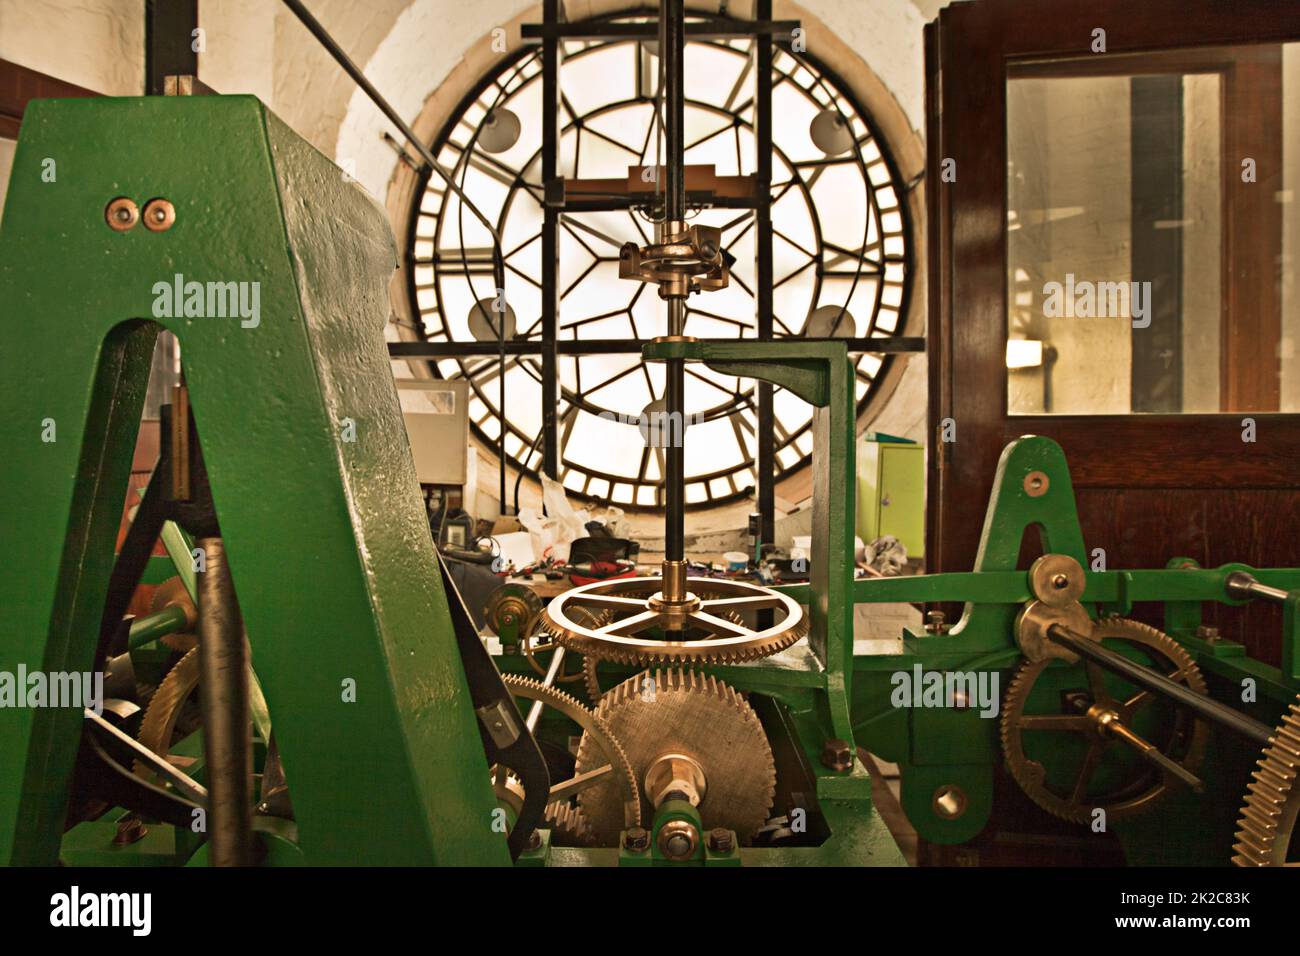 Die Mechanik der Zeit. Uhrwerk-Maschinen in einem Uhrenturm. Stockfoto